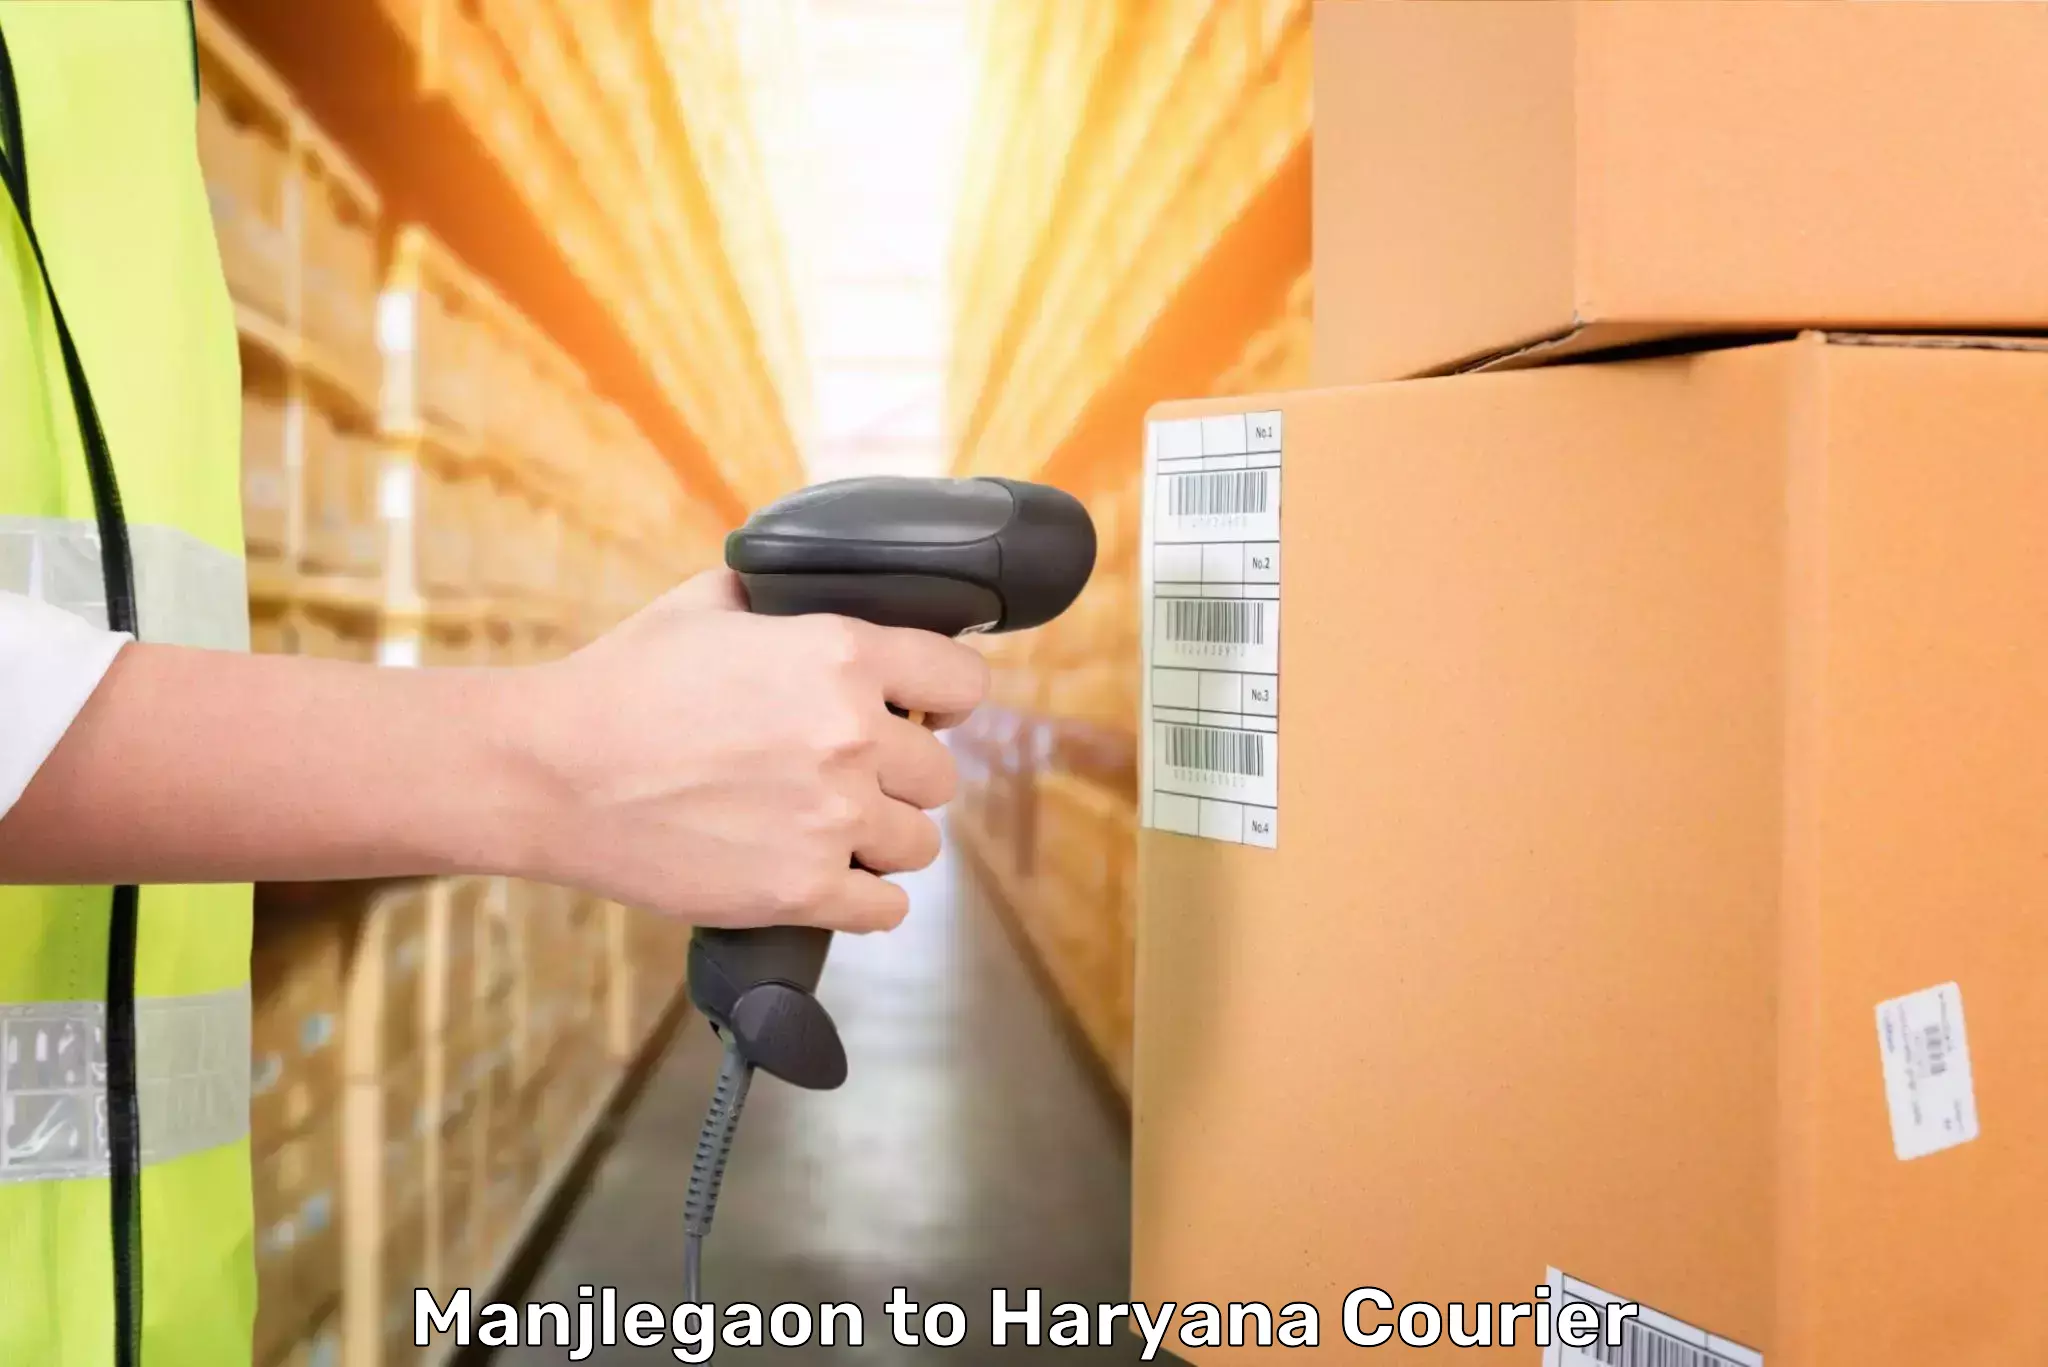 Baggage transport updates Manjlegaon to Haryana